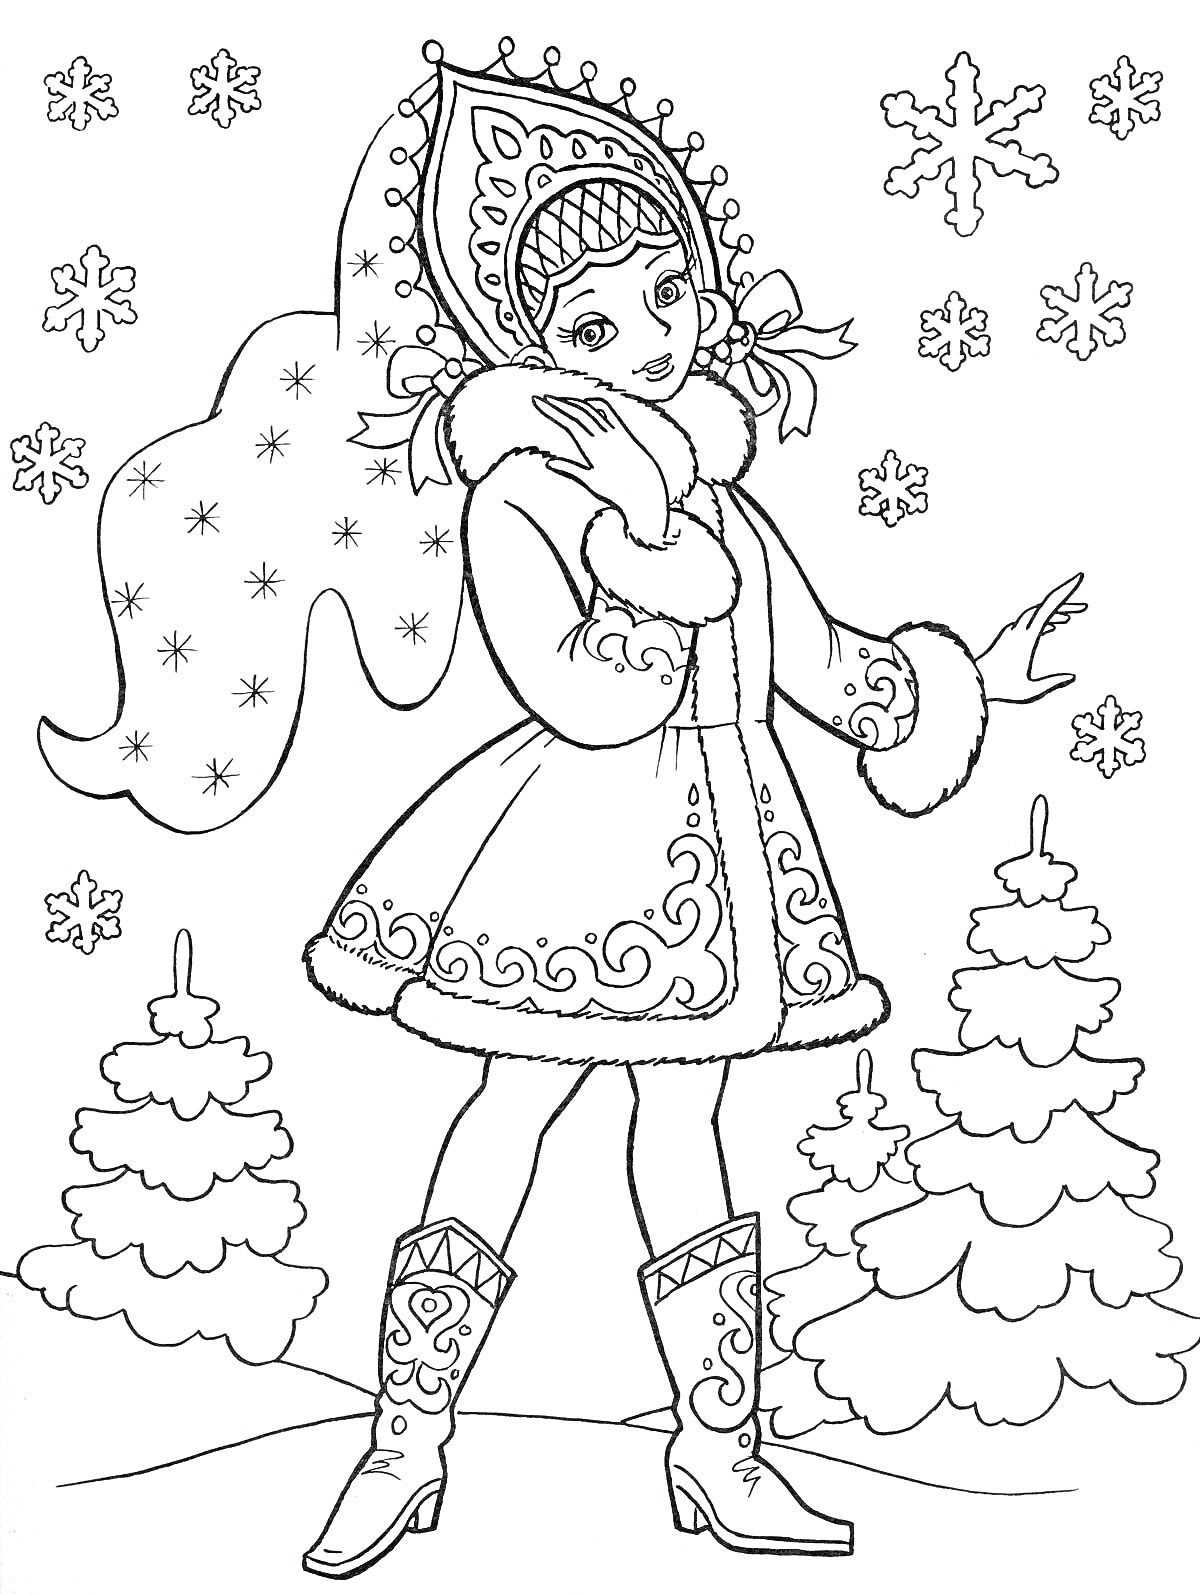 Раскраска Девочка в традиционном зимнем костюме среди ёлок и снежинок